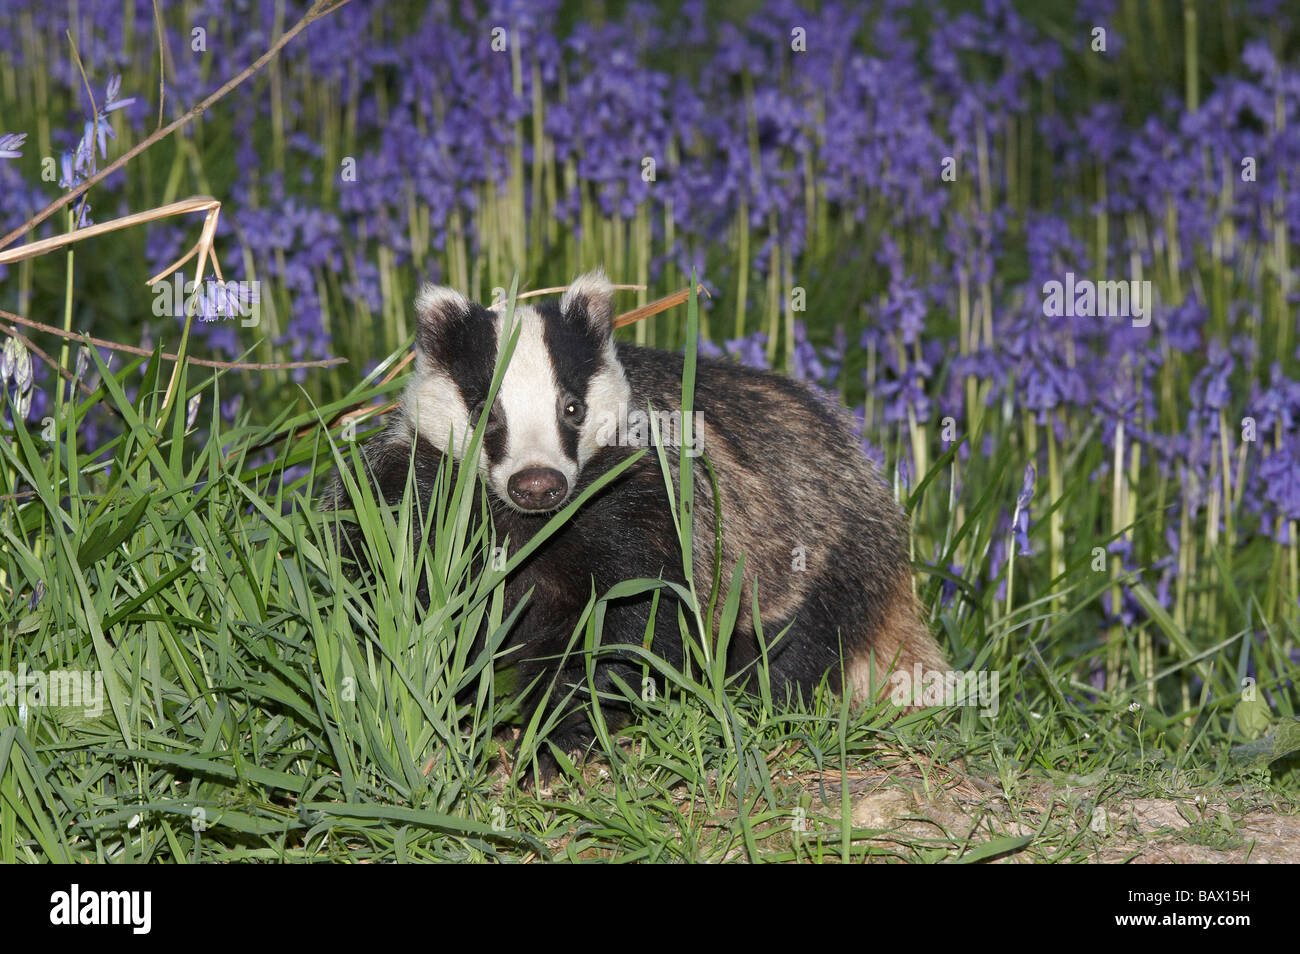 Eurasian badger and bluebells Stock Photo